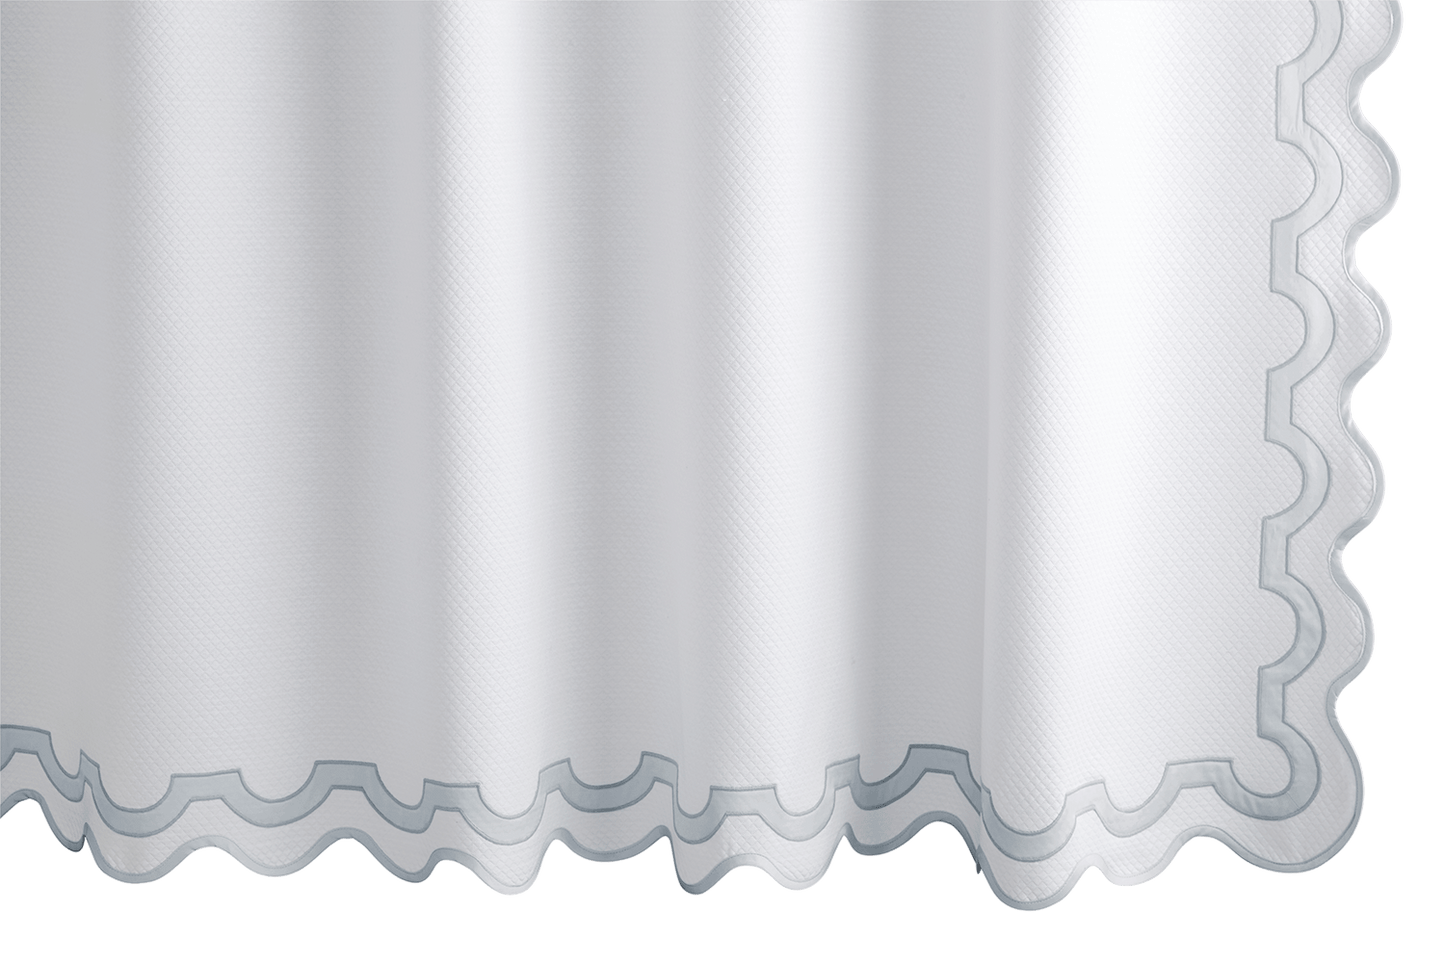 Mirasol Shower Curtain